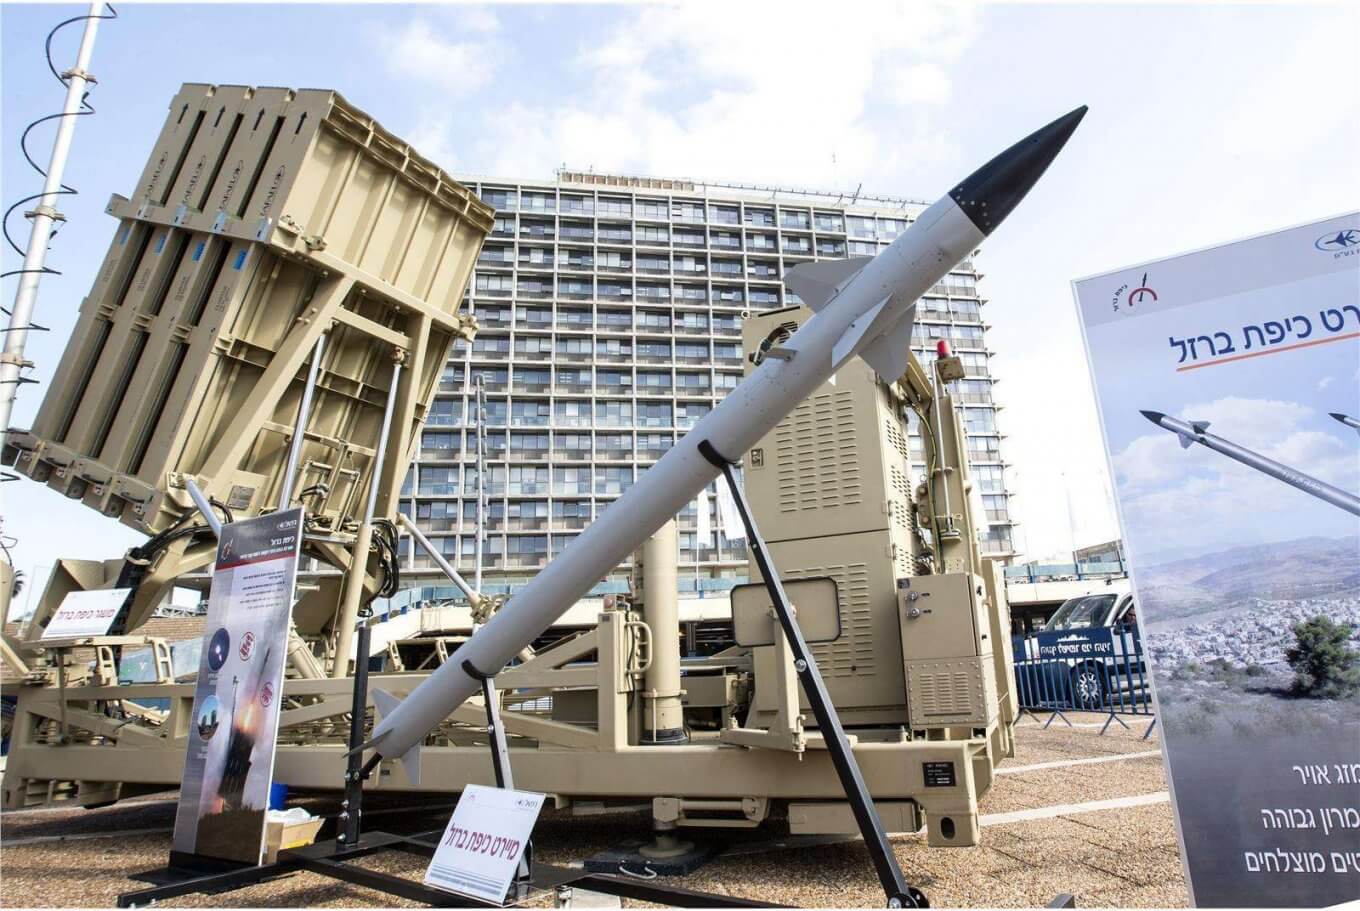 Стоимость системы ПРО “Железный купол” и поставки другим странам. Стоимость ракеты «Тамир» по разным оценкам составляет от 20 до 100 тысяч долларов. Фото.